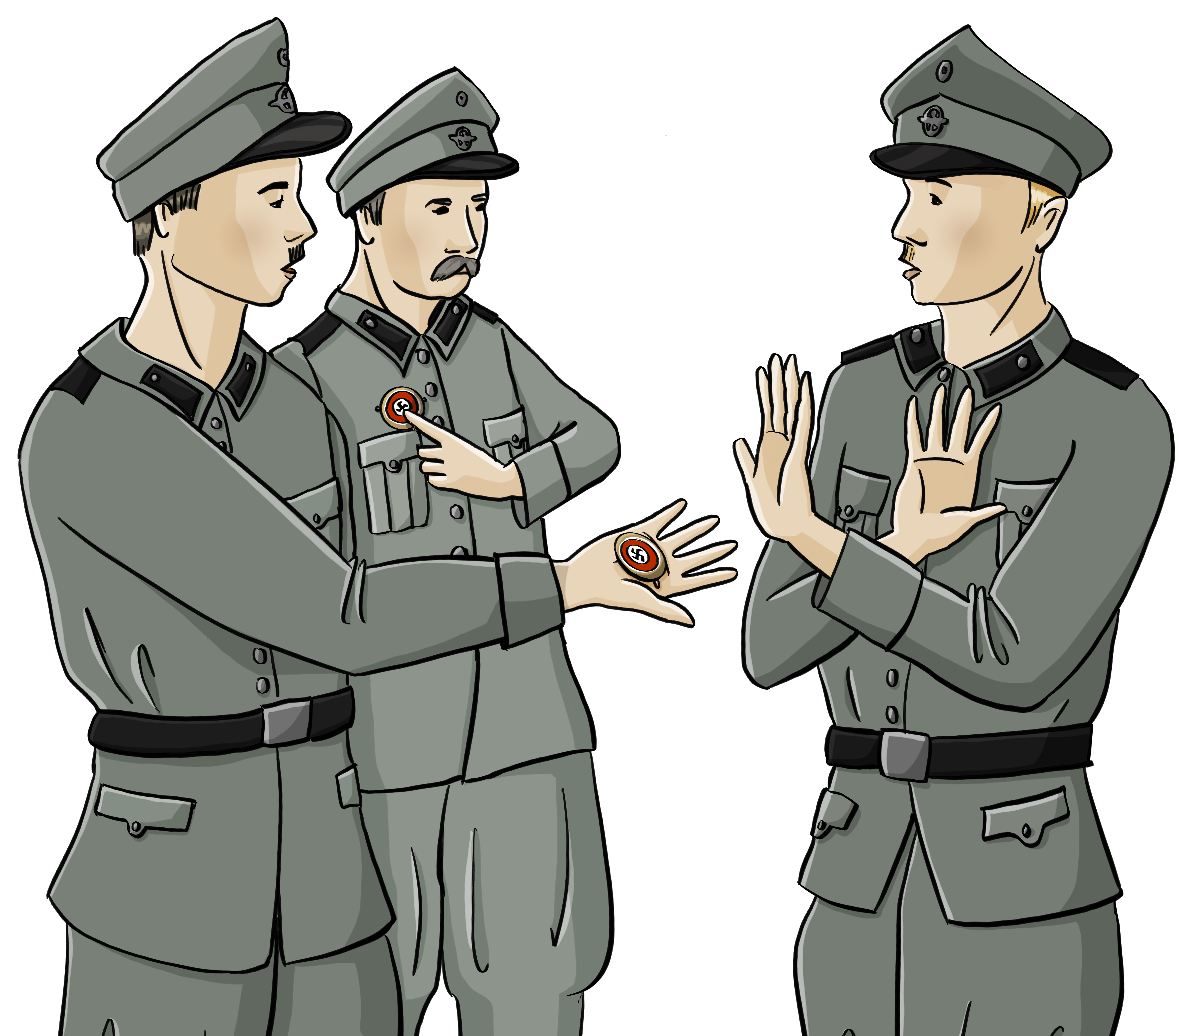 Zwei Polizisten in Uniformen aus der NS-Zeit stehen einem dritten Polizisten gegenüber. Ein Polizist zeigt auf ein Abzeichen an seiner Brust, der zweite Polizist hält ein Abzeichen auf seiner offenen Hand. Der dritte Polizist kreuzt abwehrend die Hände. 